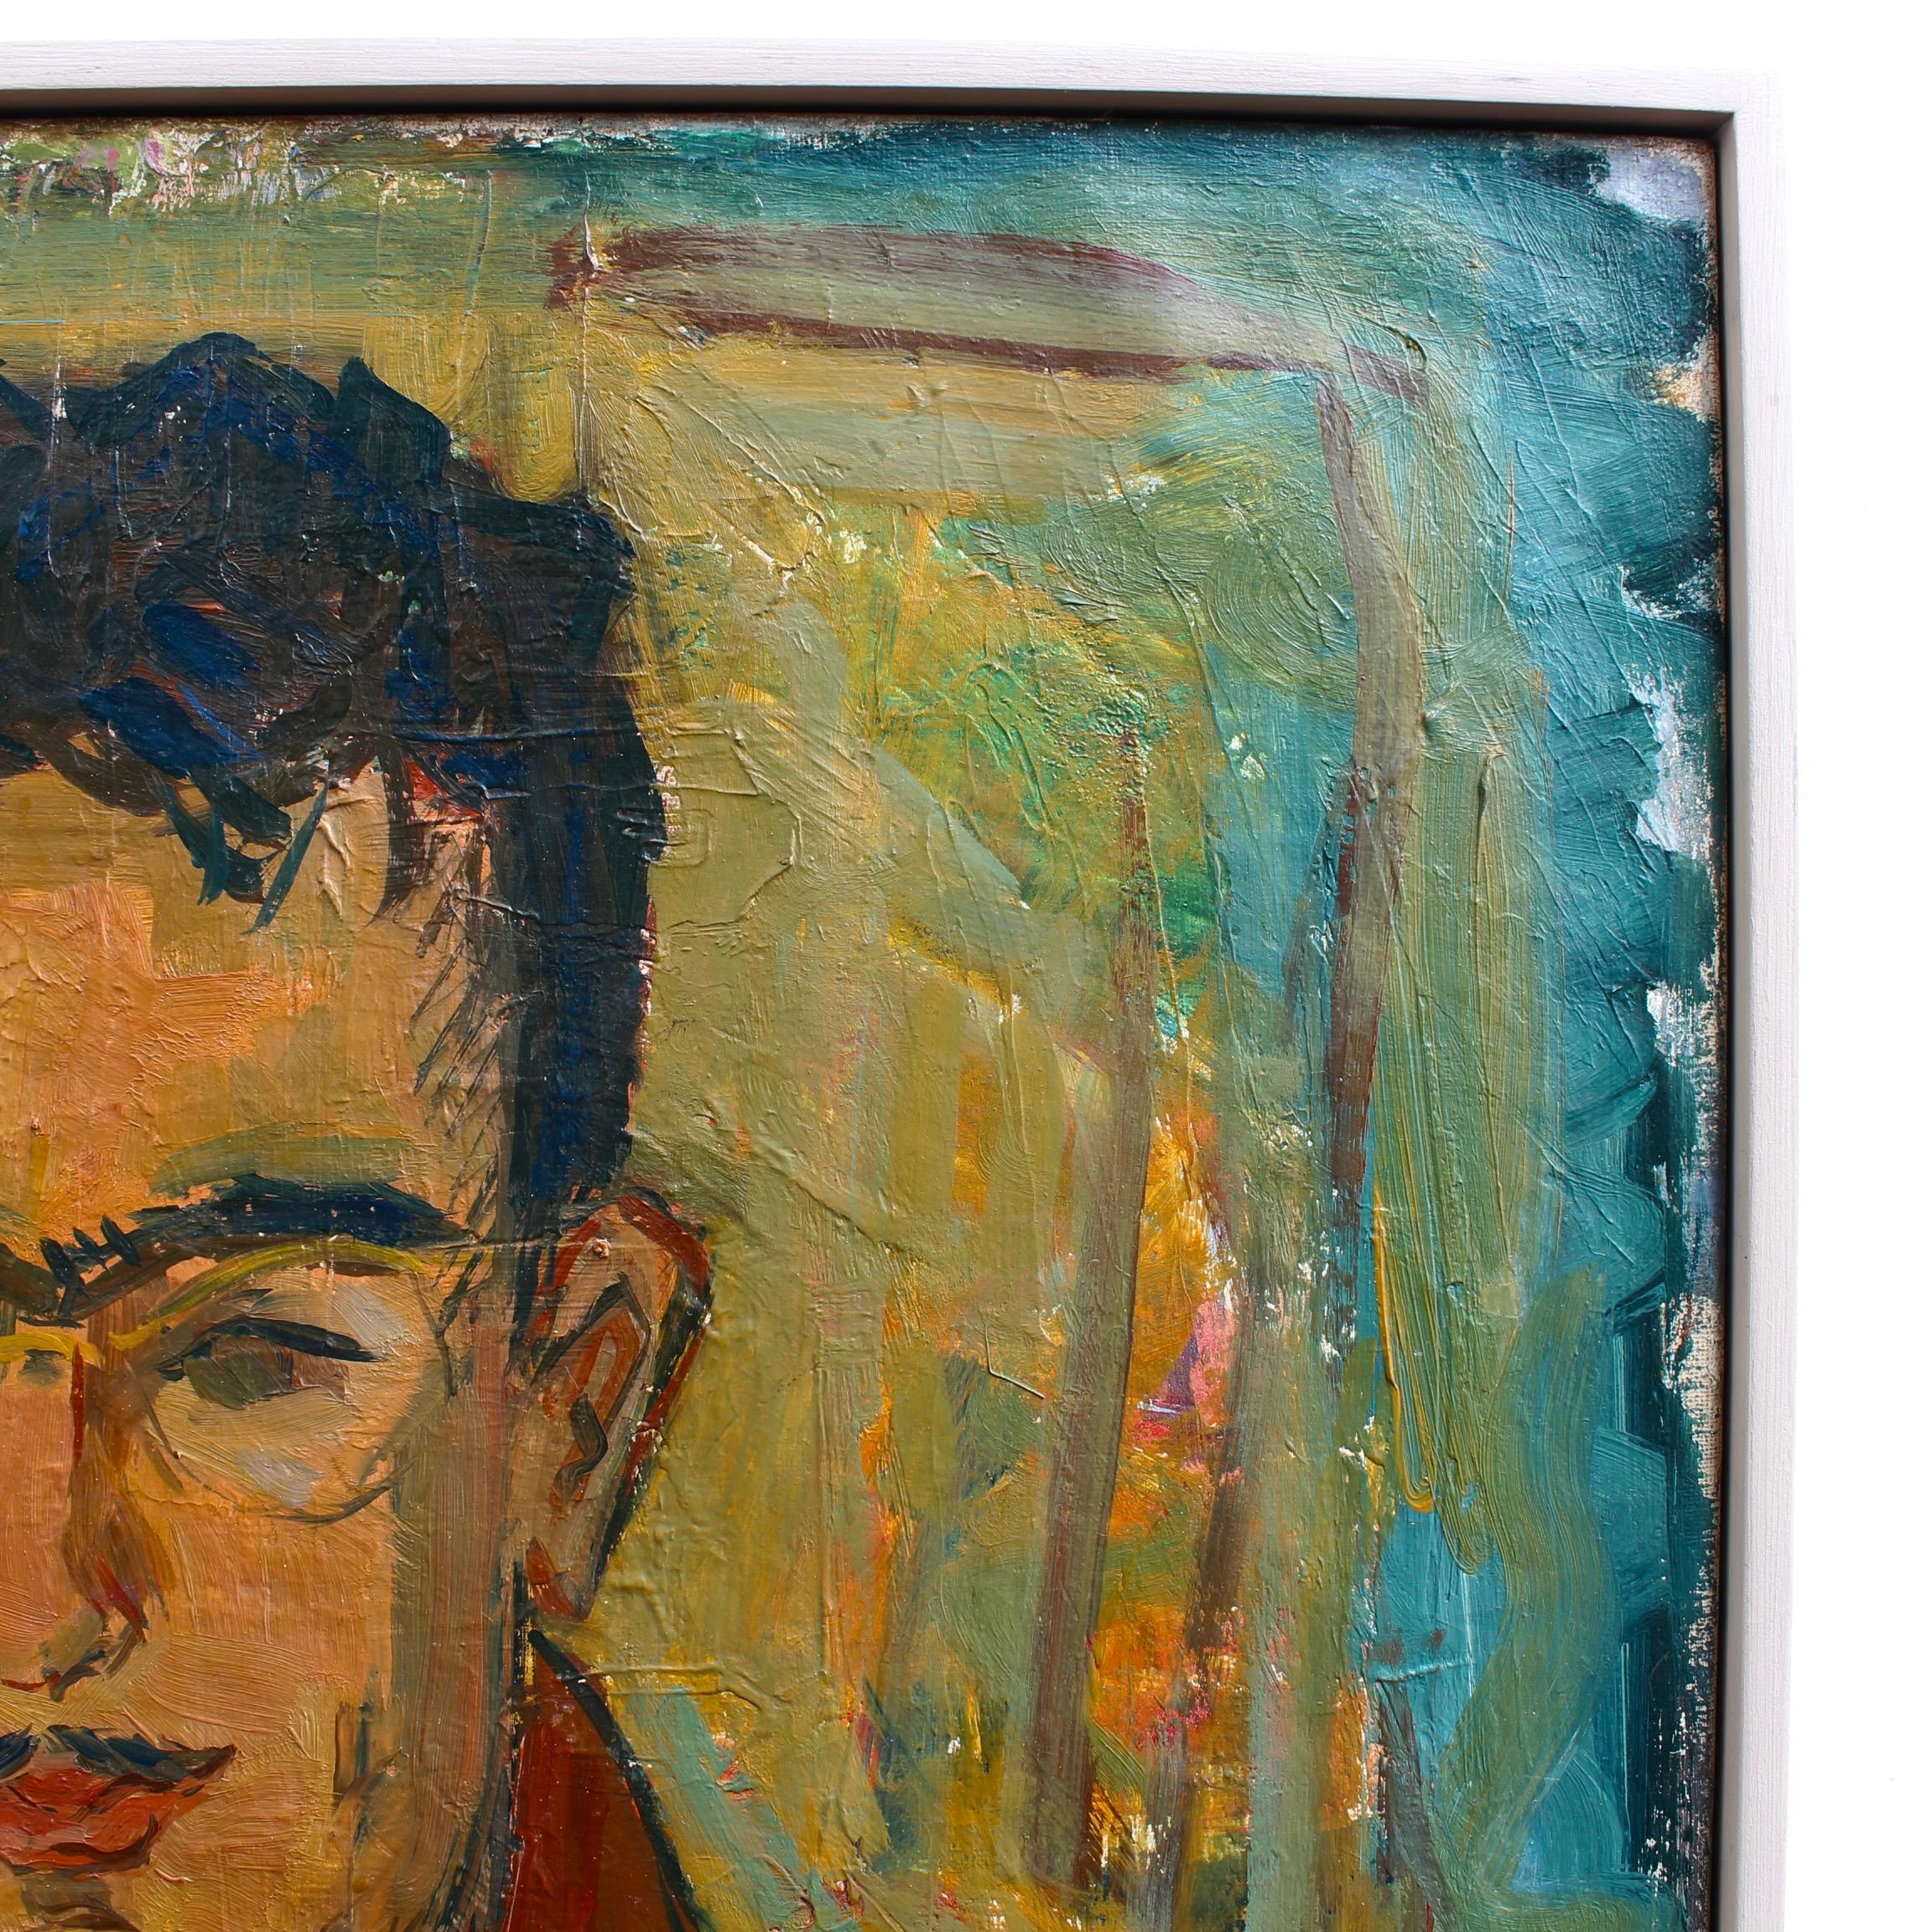 Portrait d'un homme, huile sur toile, par Yvonne Guégan (vers les années 1970). Il ne s'agit pas d'un portrait du milliardaire reclus Howard Hughes. Malheureusement, nous ne savons pas de qui il s'agit, mais il a l'air d'un personnage fascinant. Les